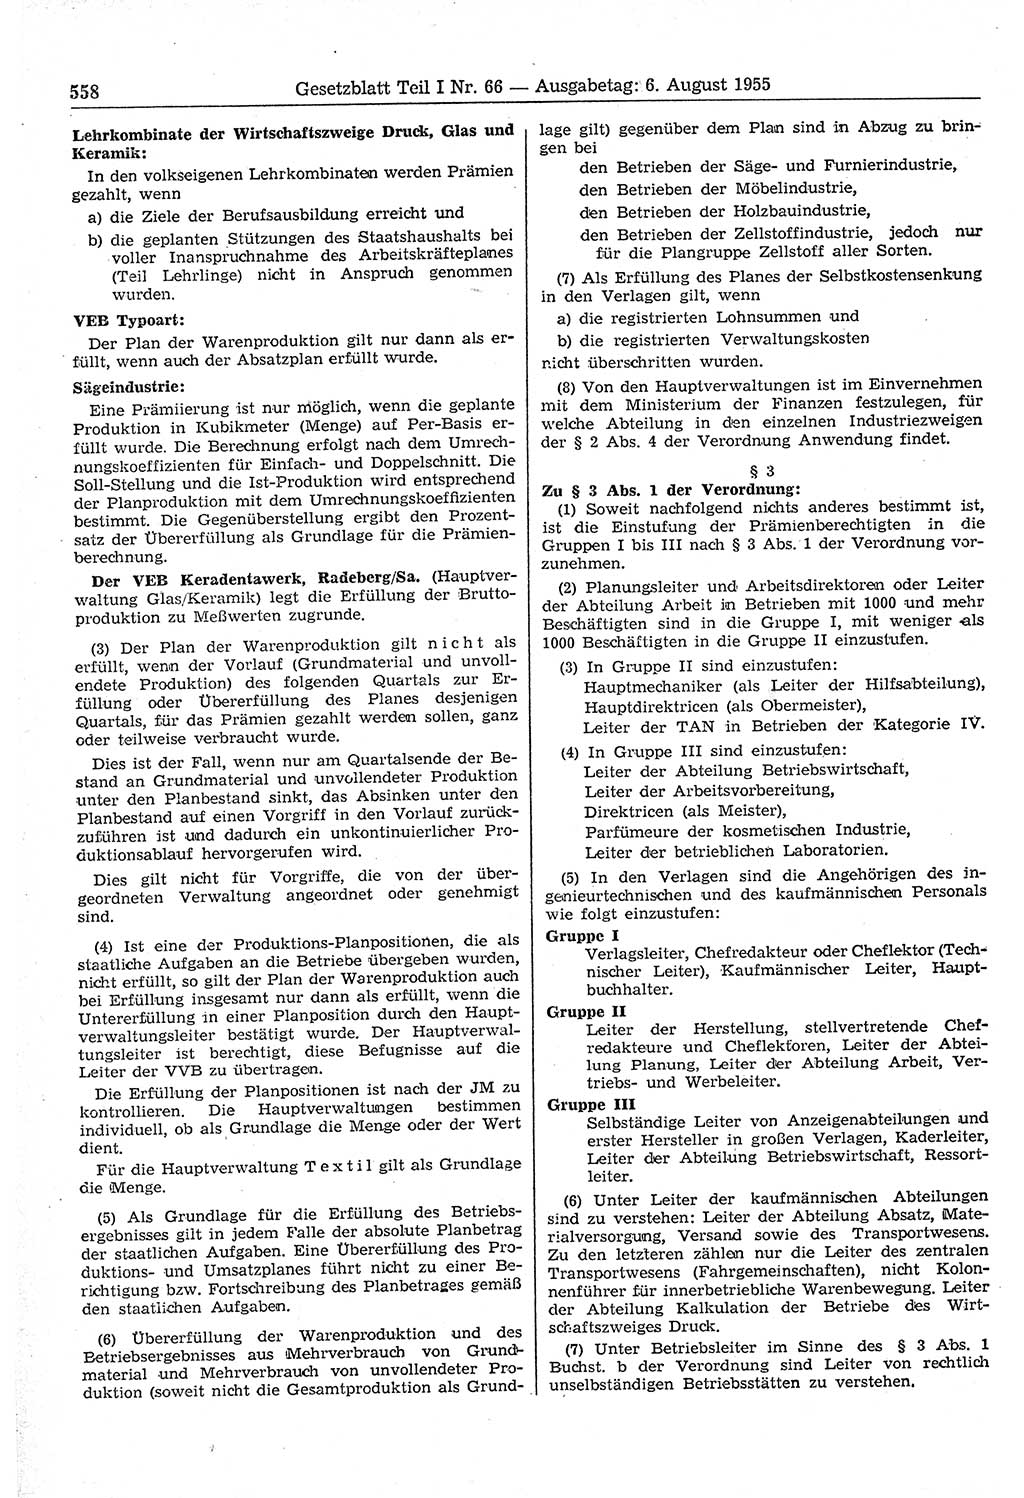 Gesetzblatt (GBl.) der Deutschen Demokratischen Republik (DDR) Teil Ⅰ 1955, Seite 558 (GBl. DDR Ⅰ 1955, S. 558)